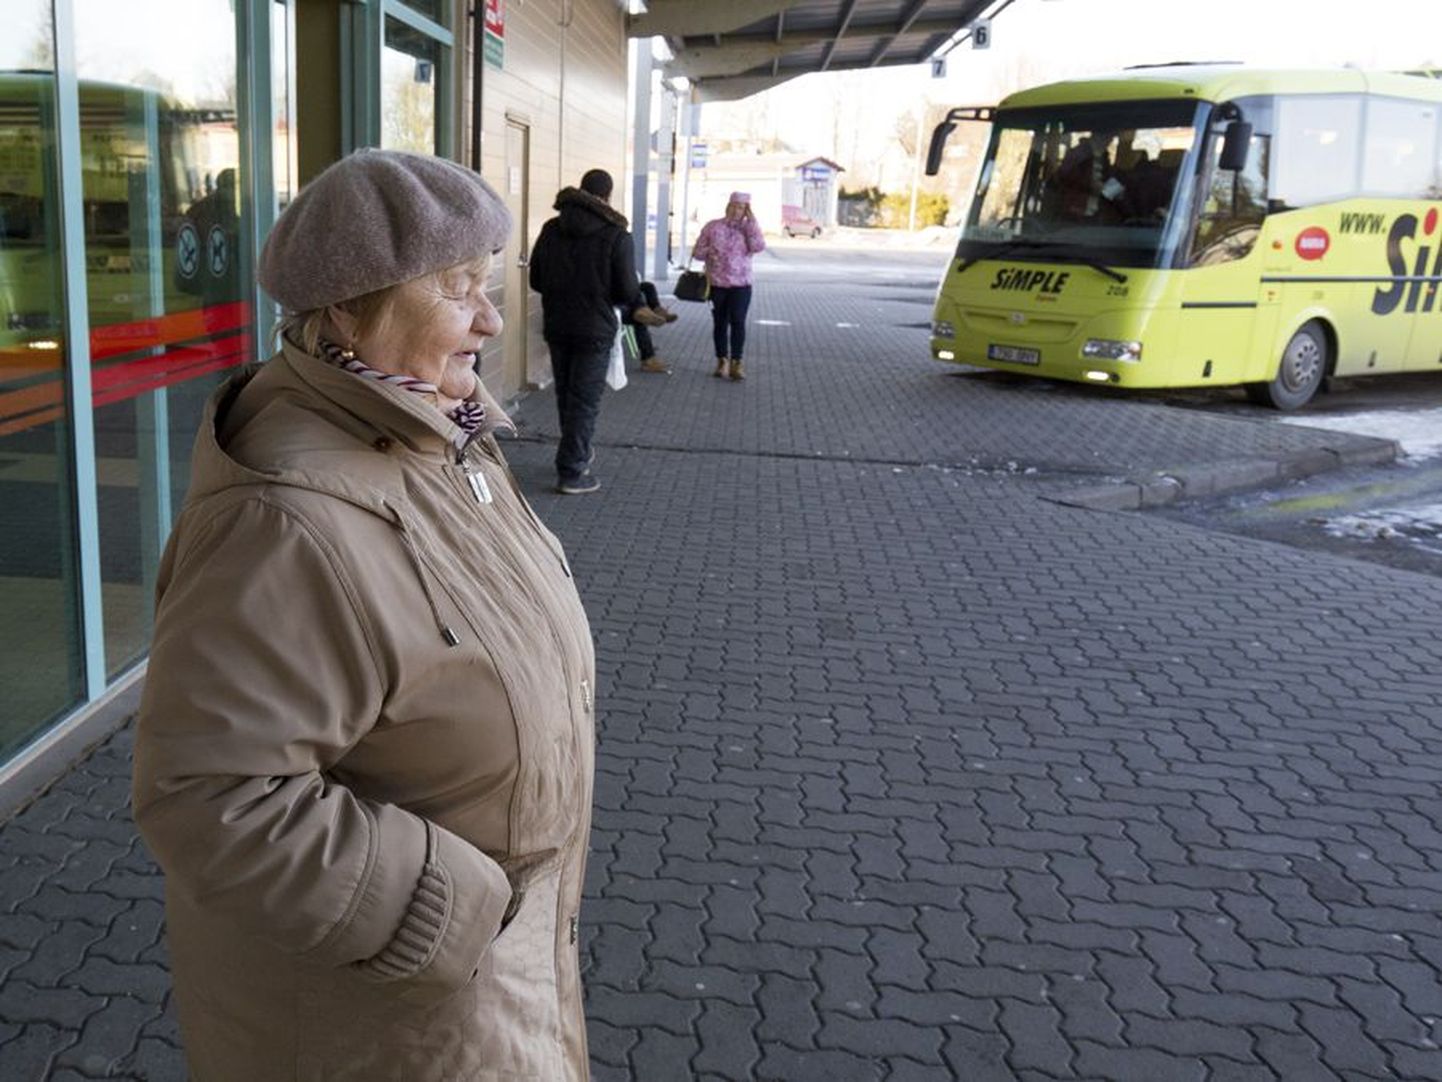 Viljandi bussijaamas bussi number 12 ootav Õilme Muni tähendas, et muidugi oleks hea, kui ka maapensionärid tasuta sõita saaksid, aga ega tükki küljest võta see eurogi, mis praegu tuleb kojupääsuks välja käia.